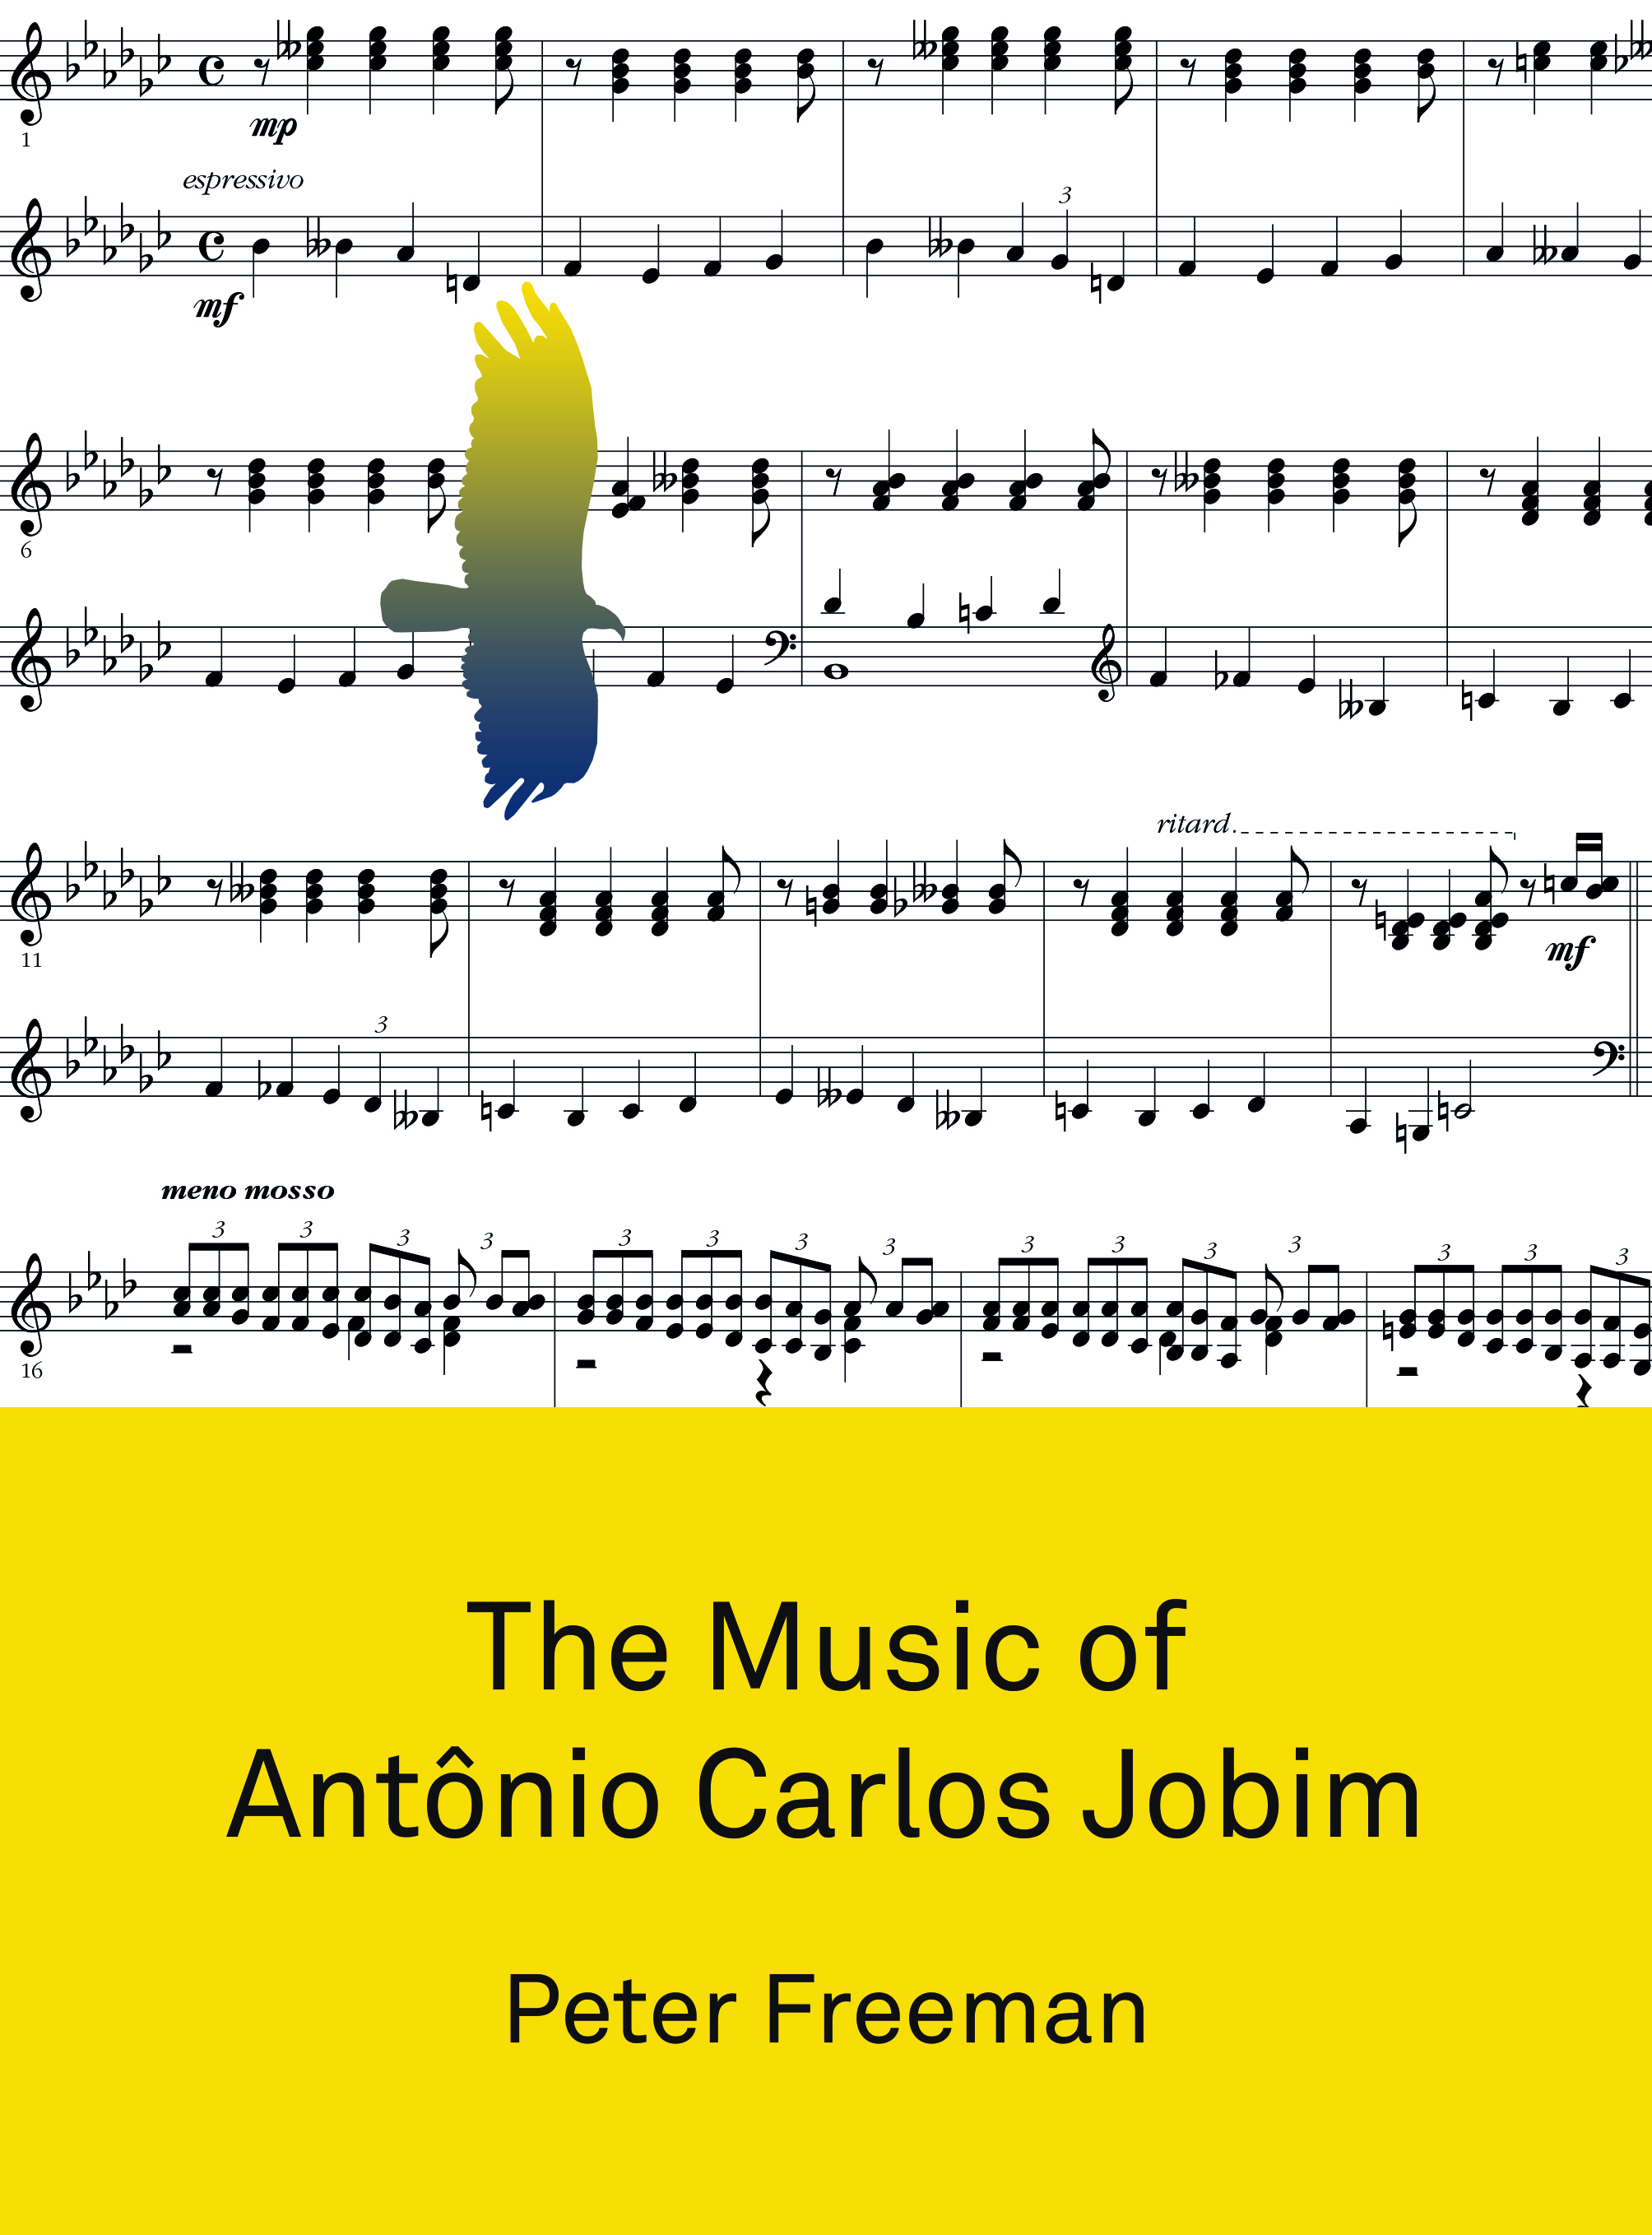 image of The Music of Antônio Carlos Jobim